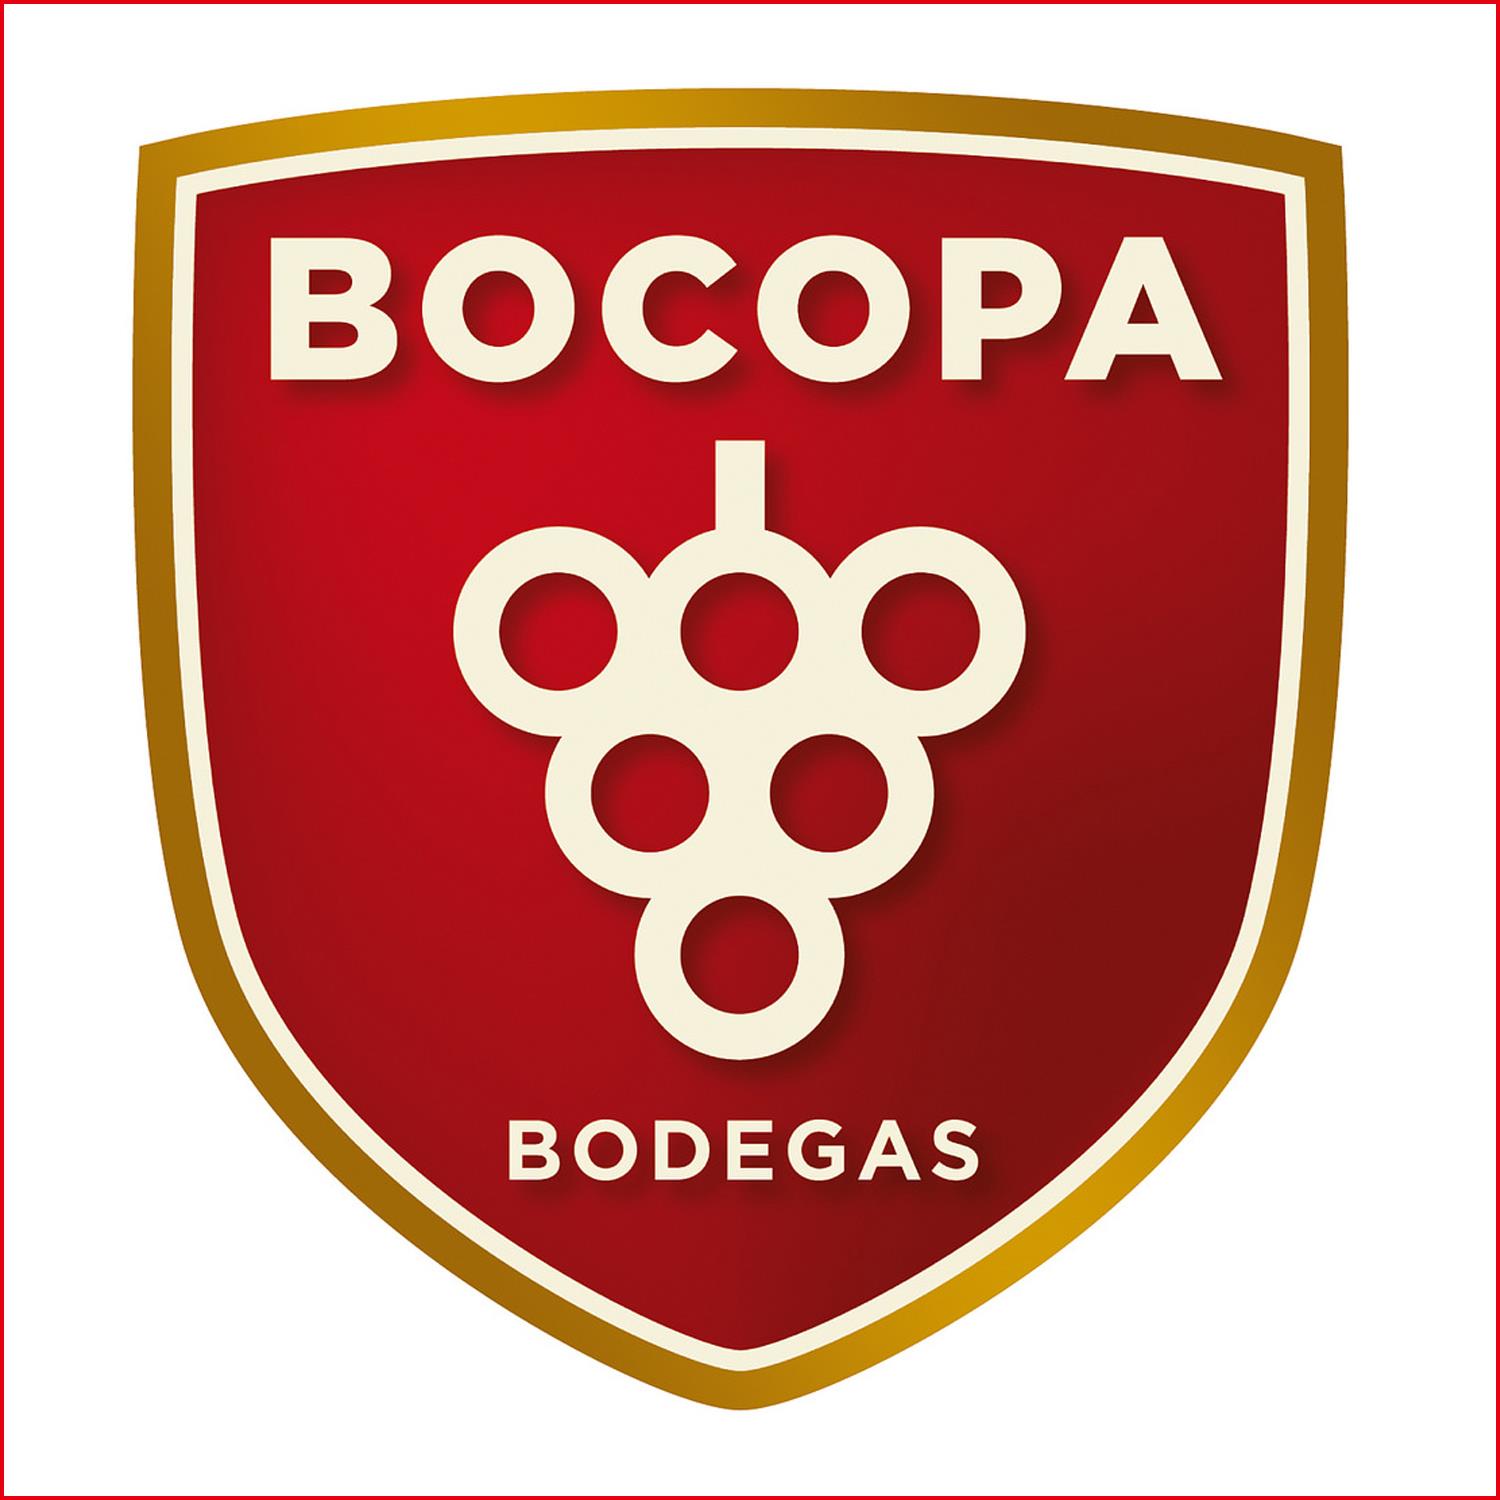 Bocopa酒莊 Bocopa